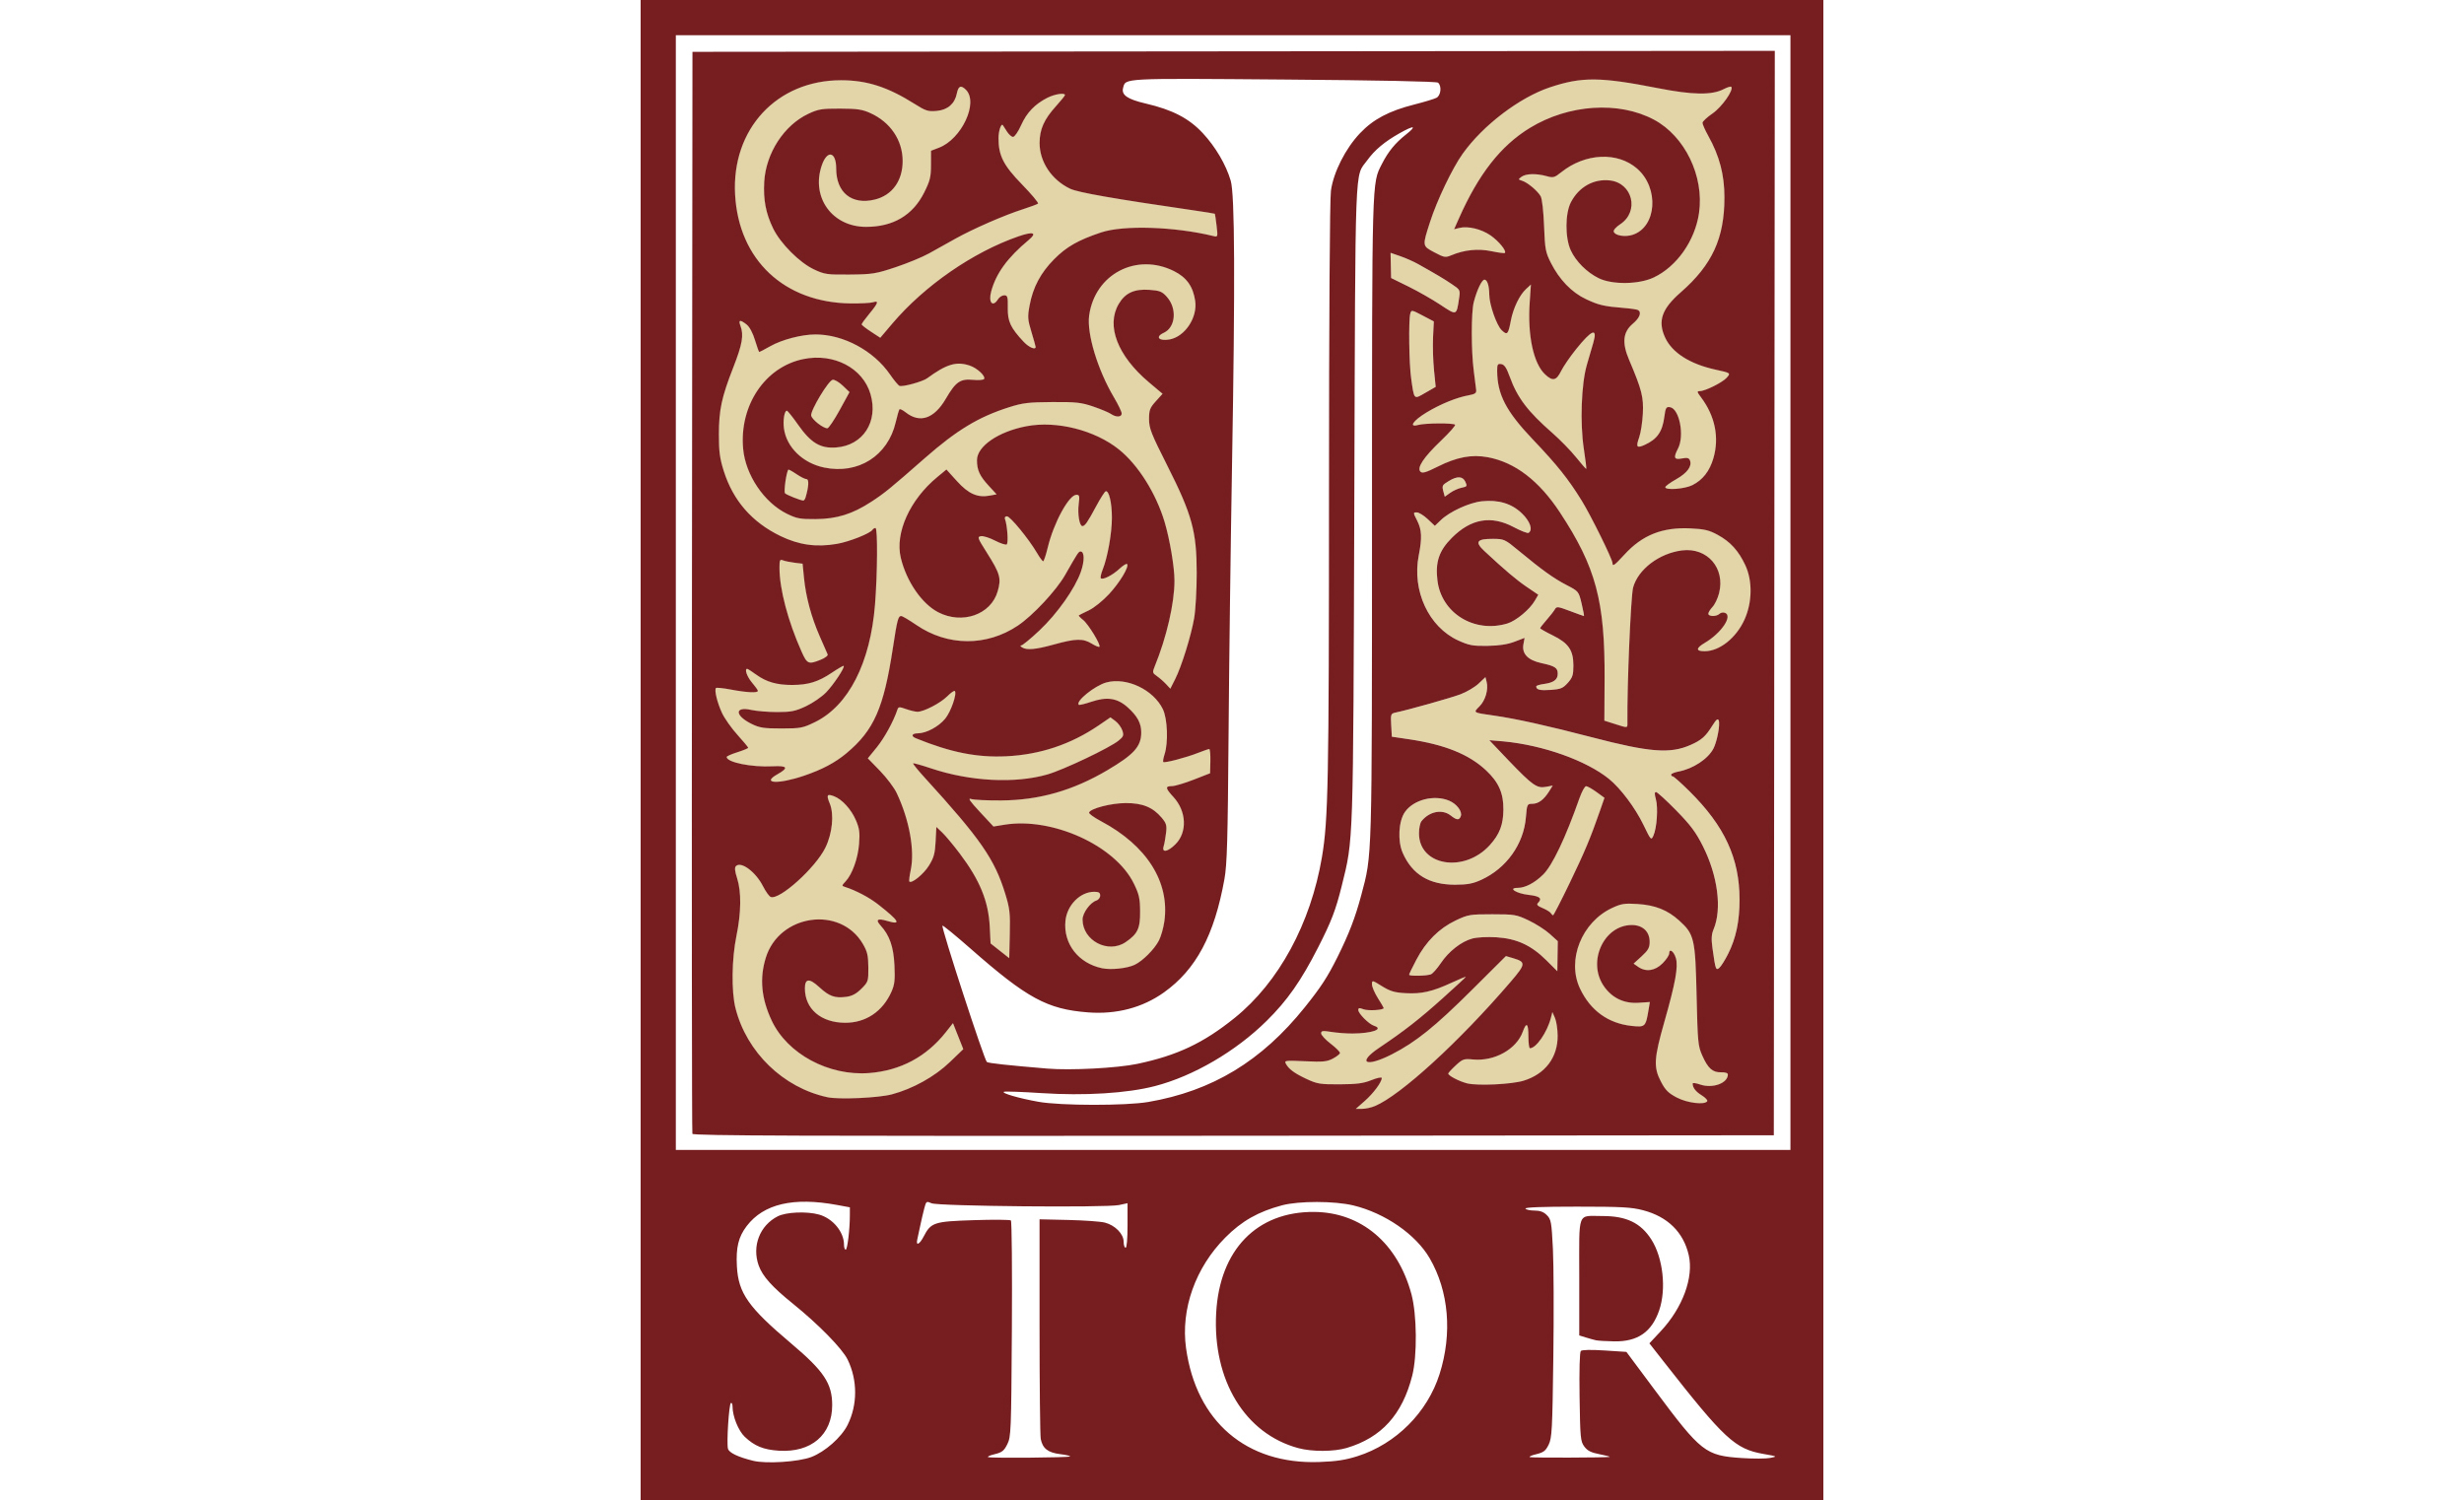 JSTOR logo